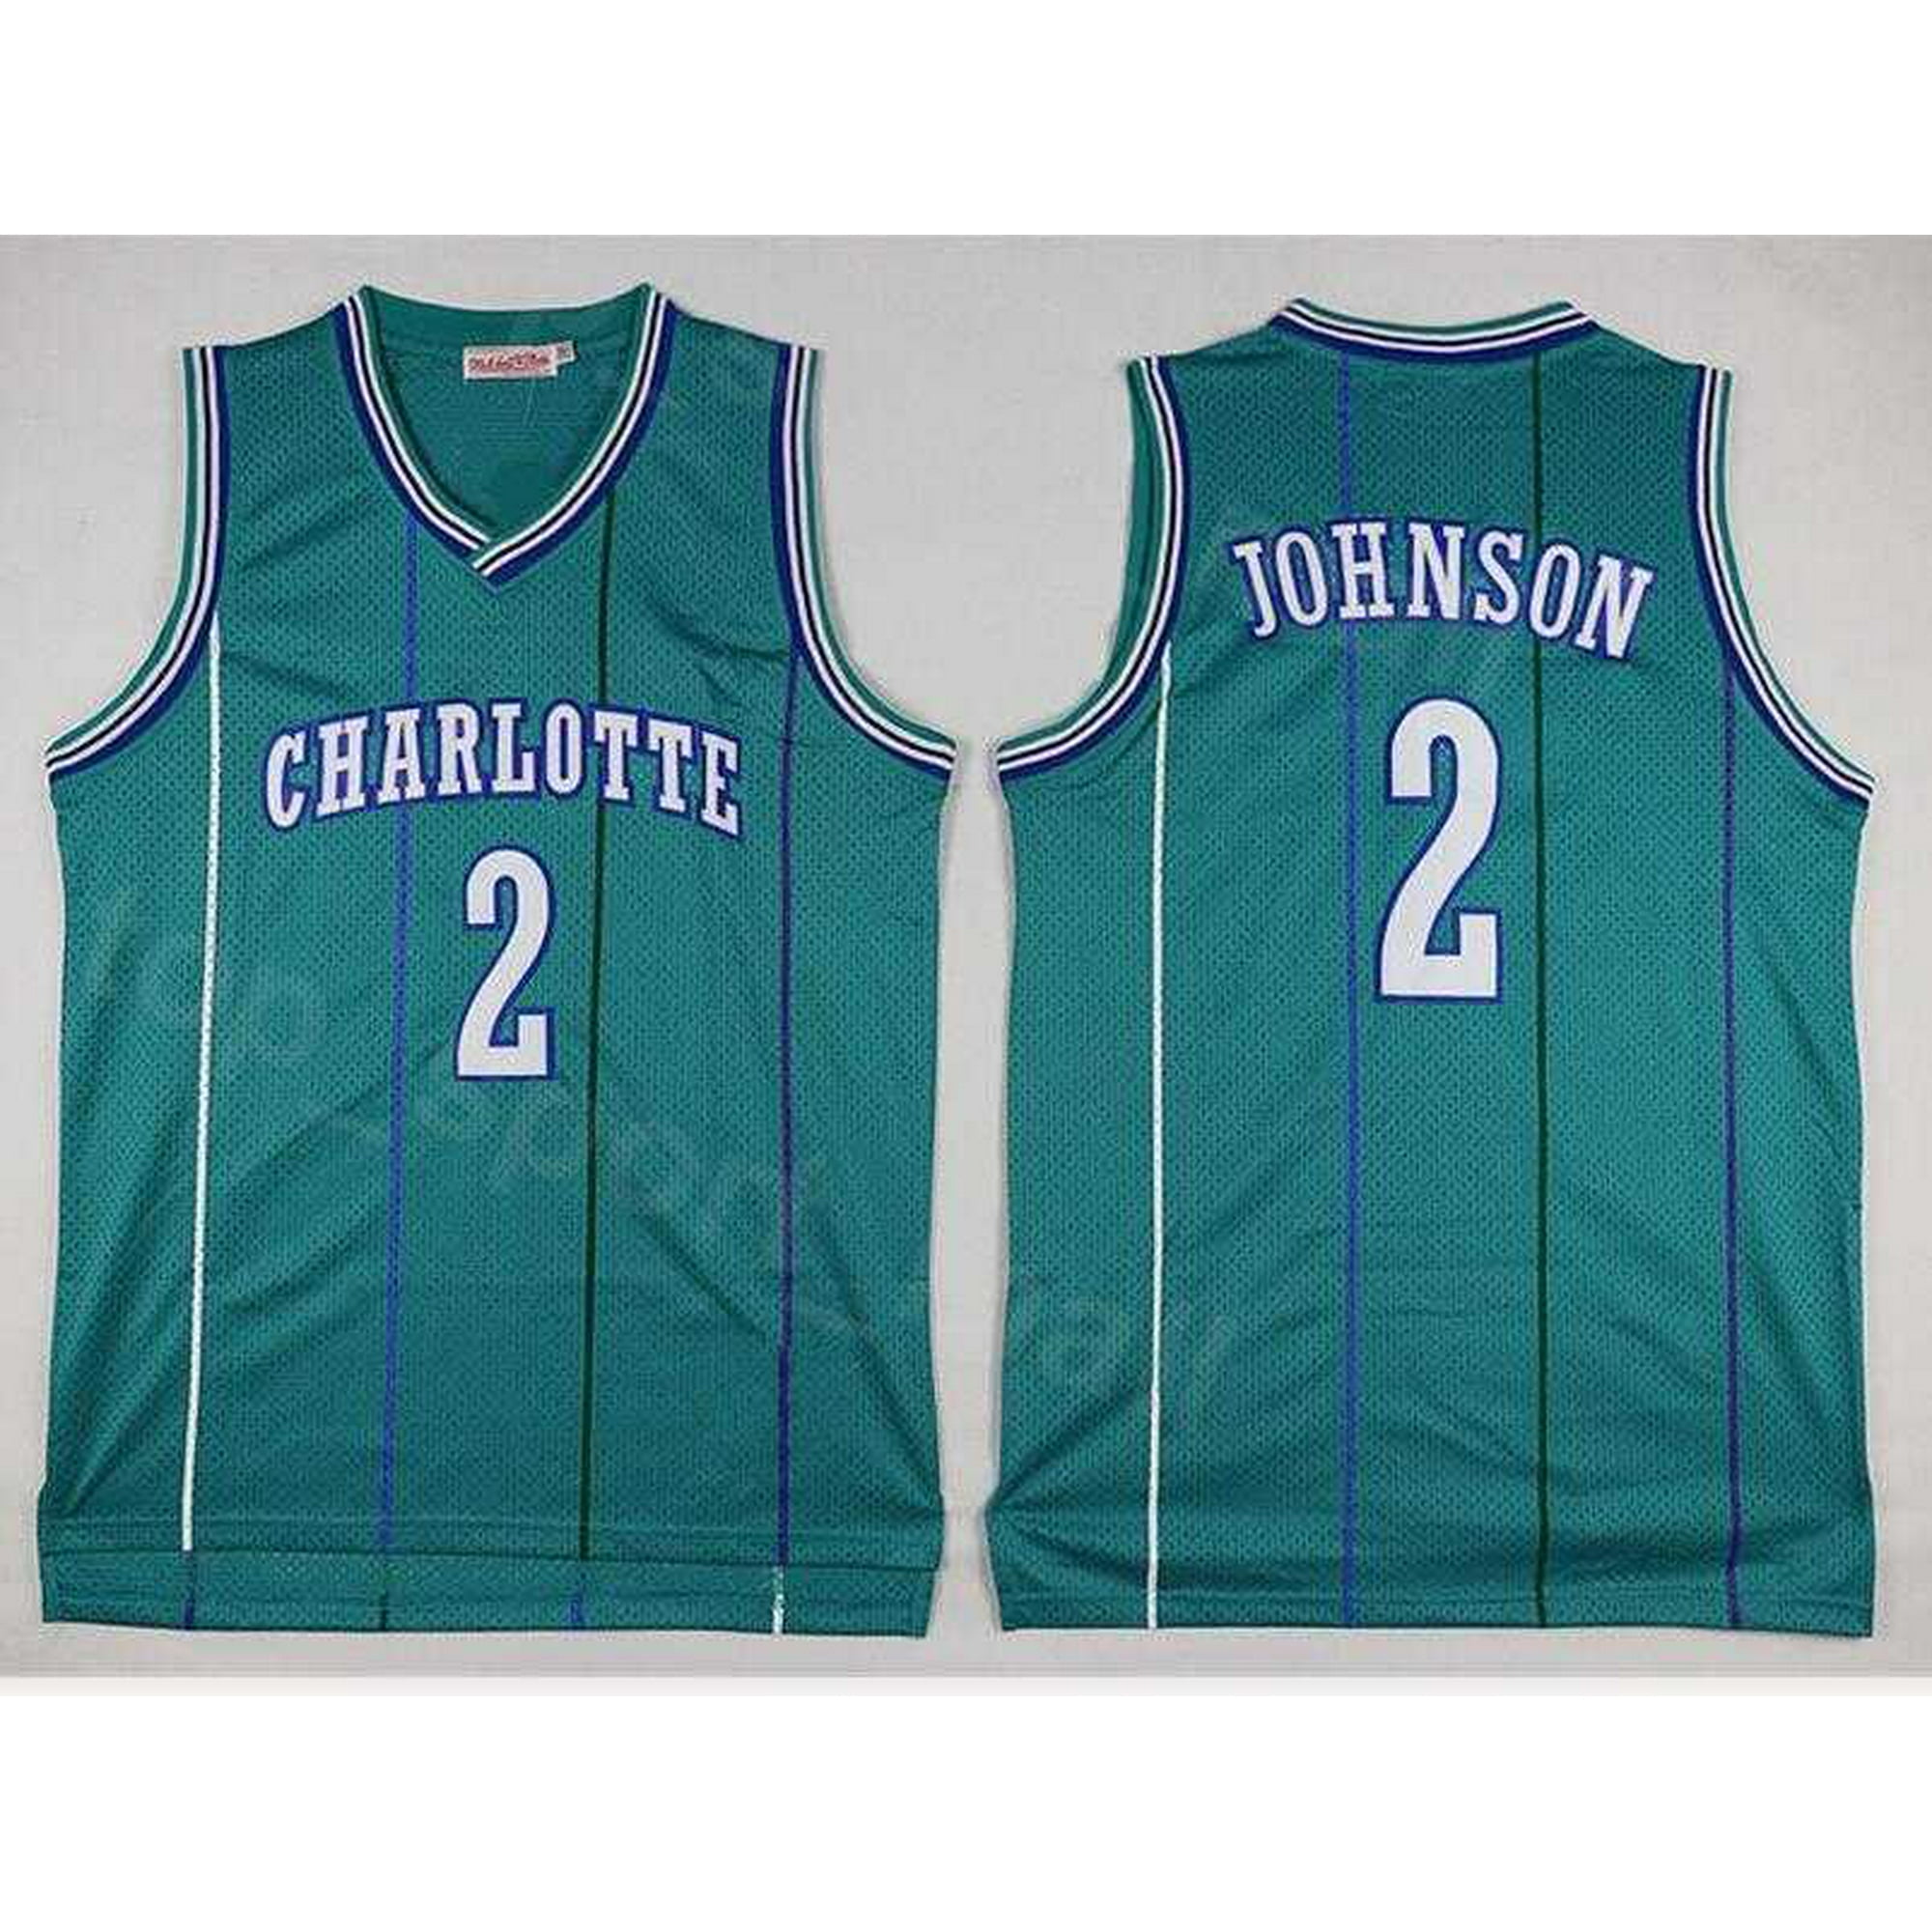 Vintage 90s Charlotte Hornets Larry Johnson NBA Basketball 